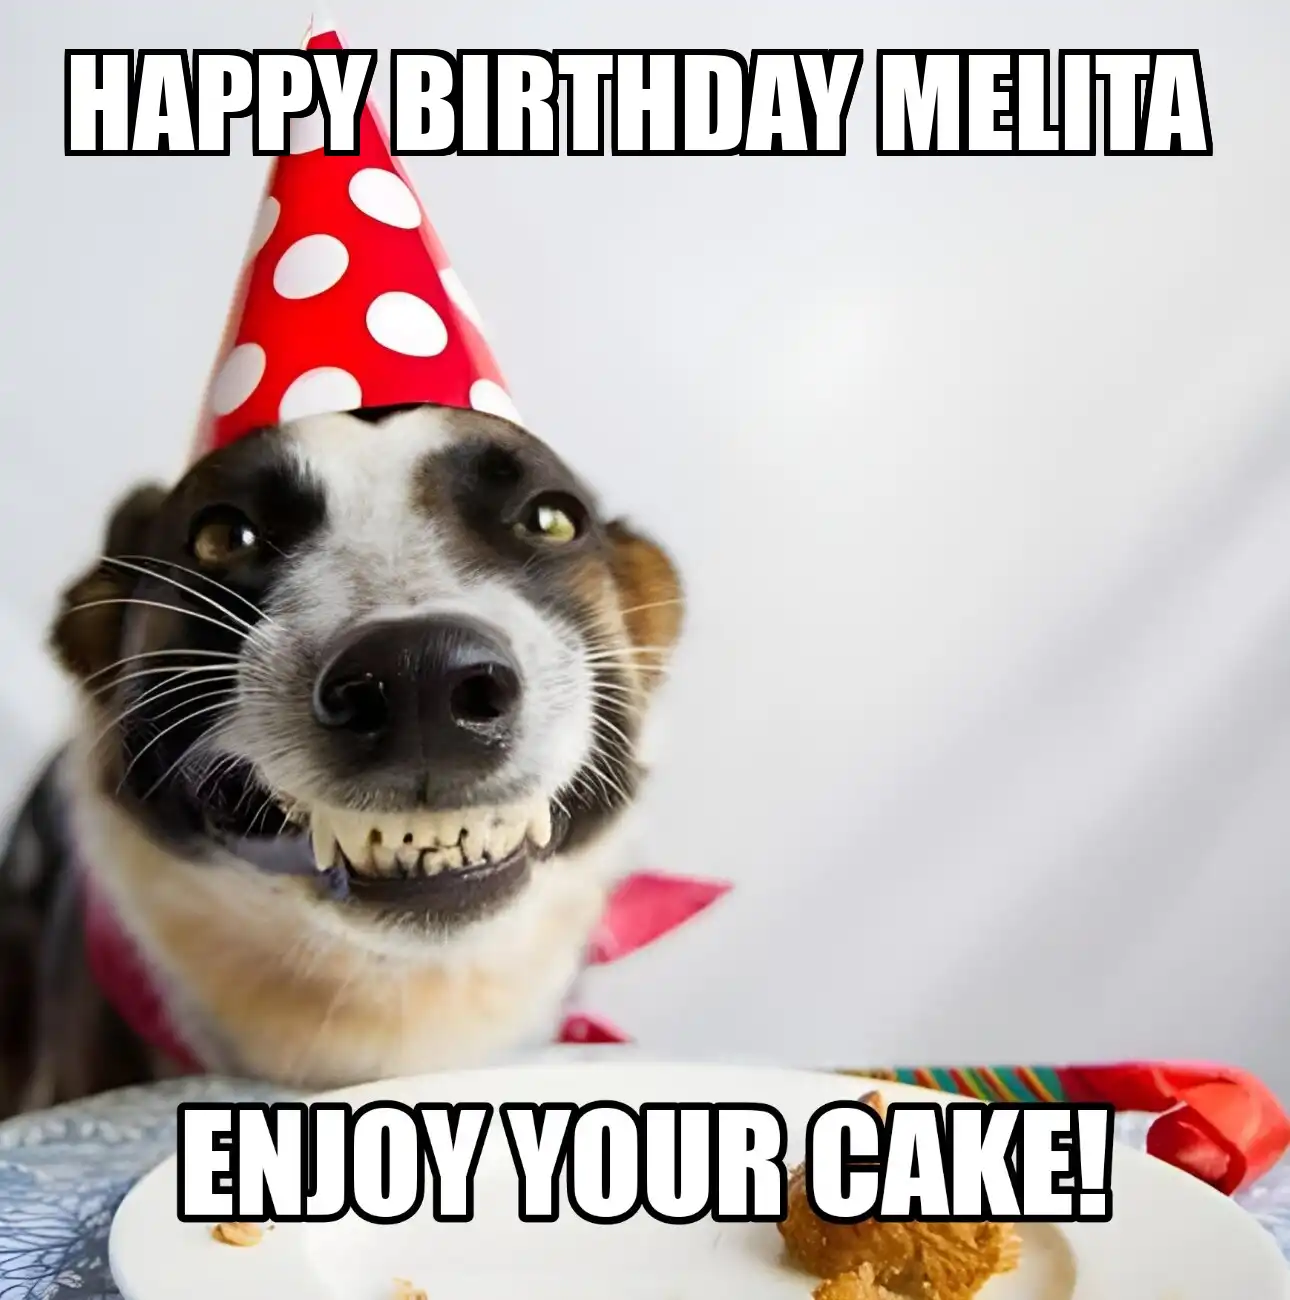 Happy Birthday Melita Enjoy Your Cake Dog Meme